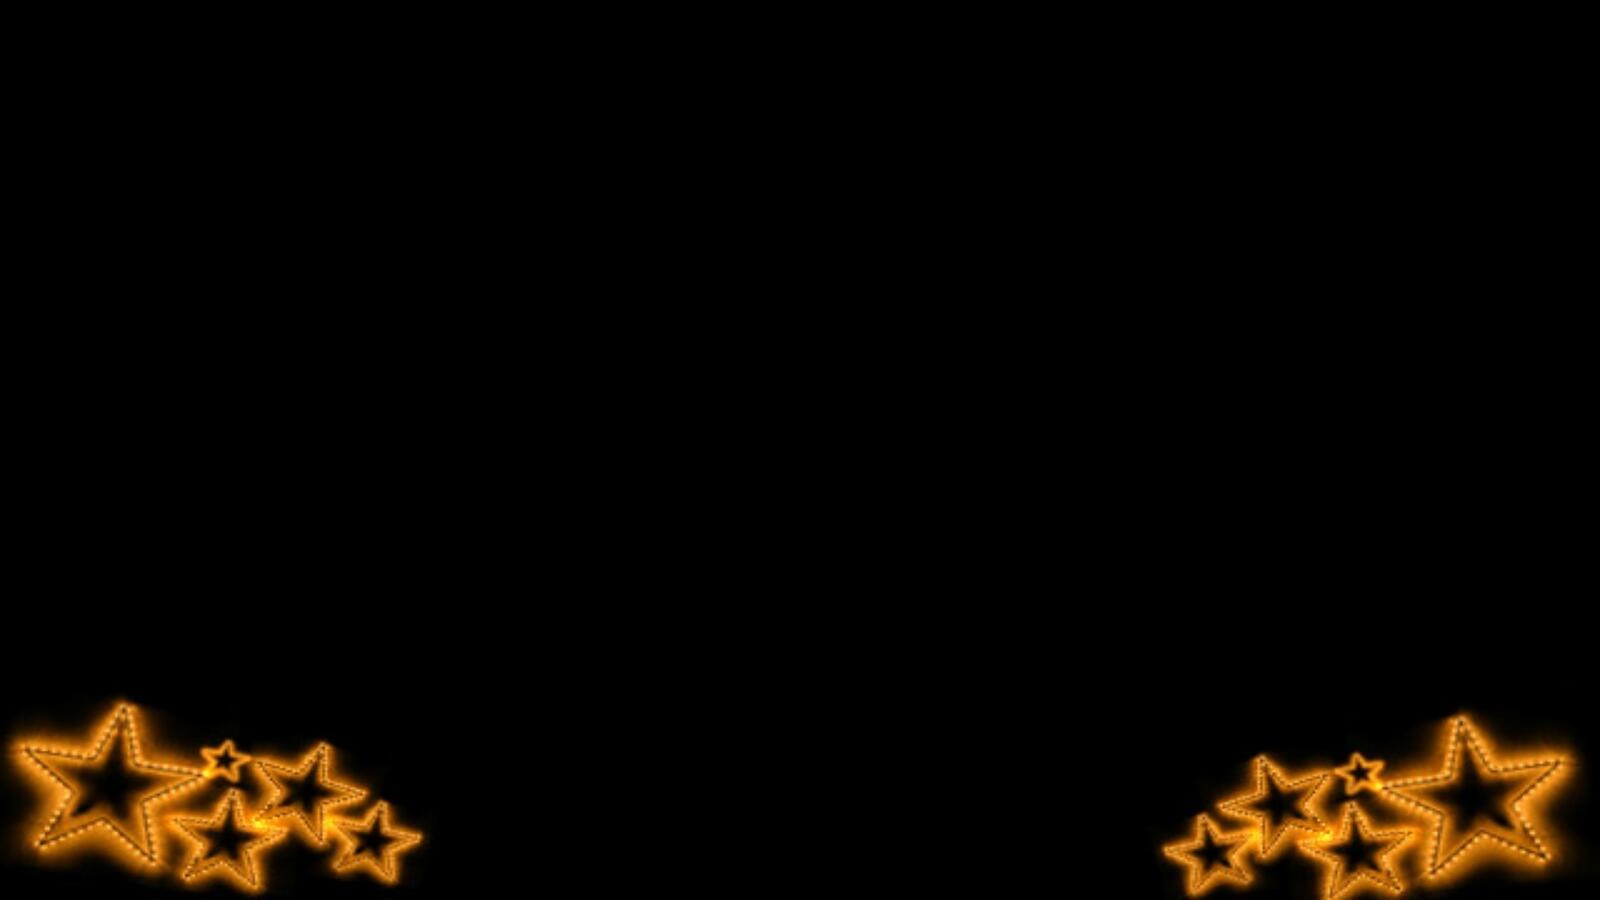 Бесплатное фото Абстрактные желтые звездочки по углам на черном фоне